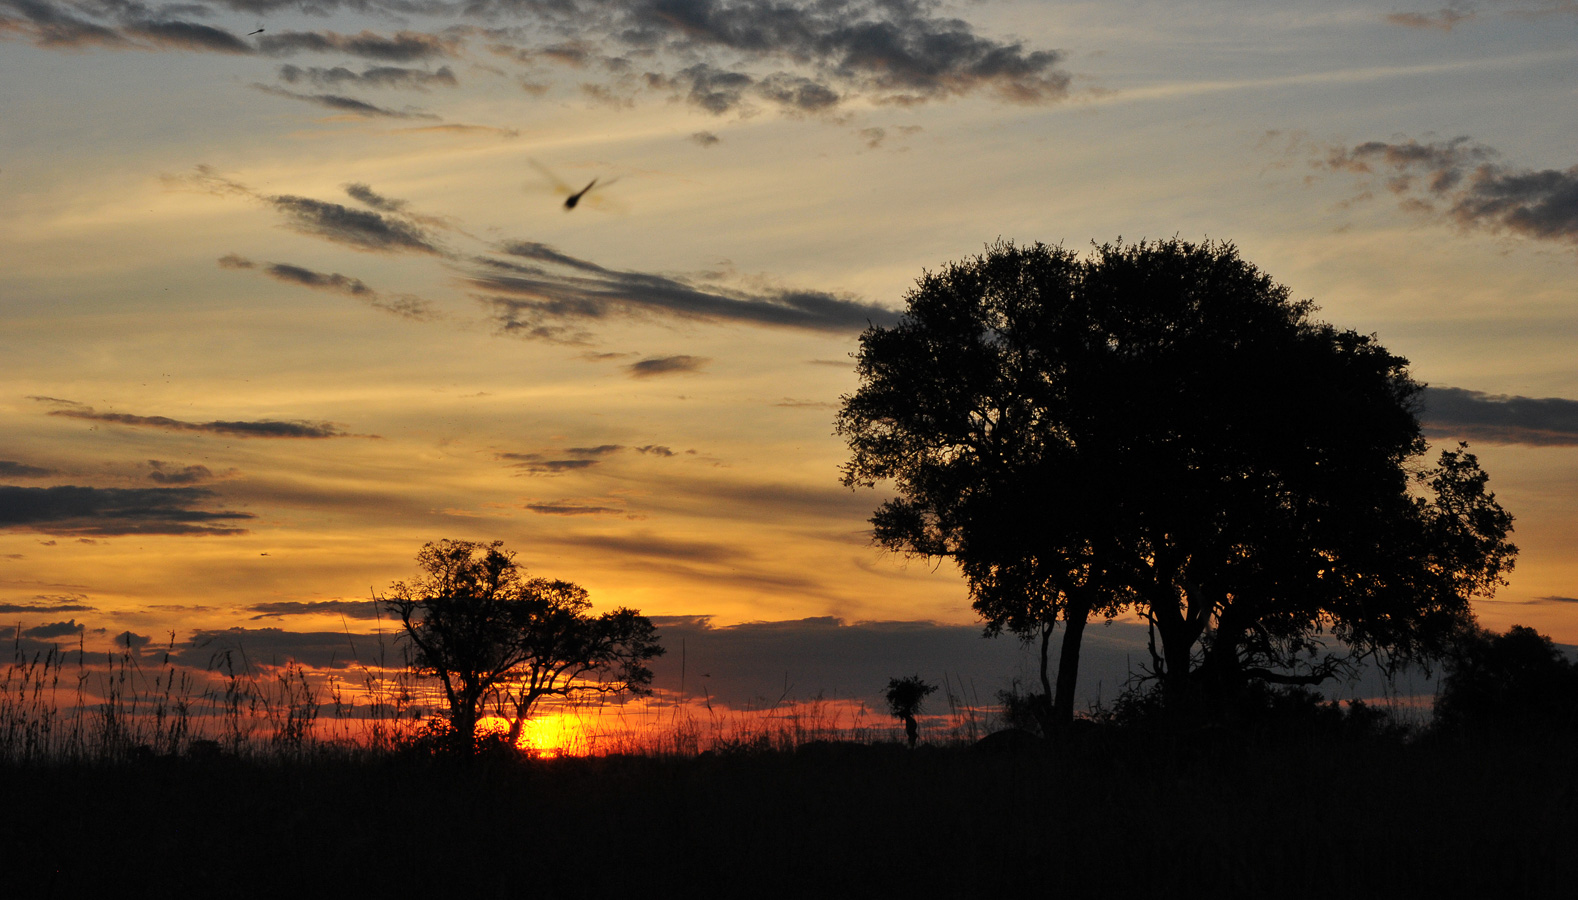 Okavango Delta [78 mm, 1/200 sec at f / 20, ISO 1600]